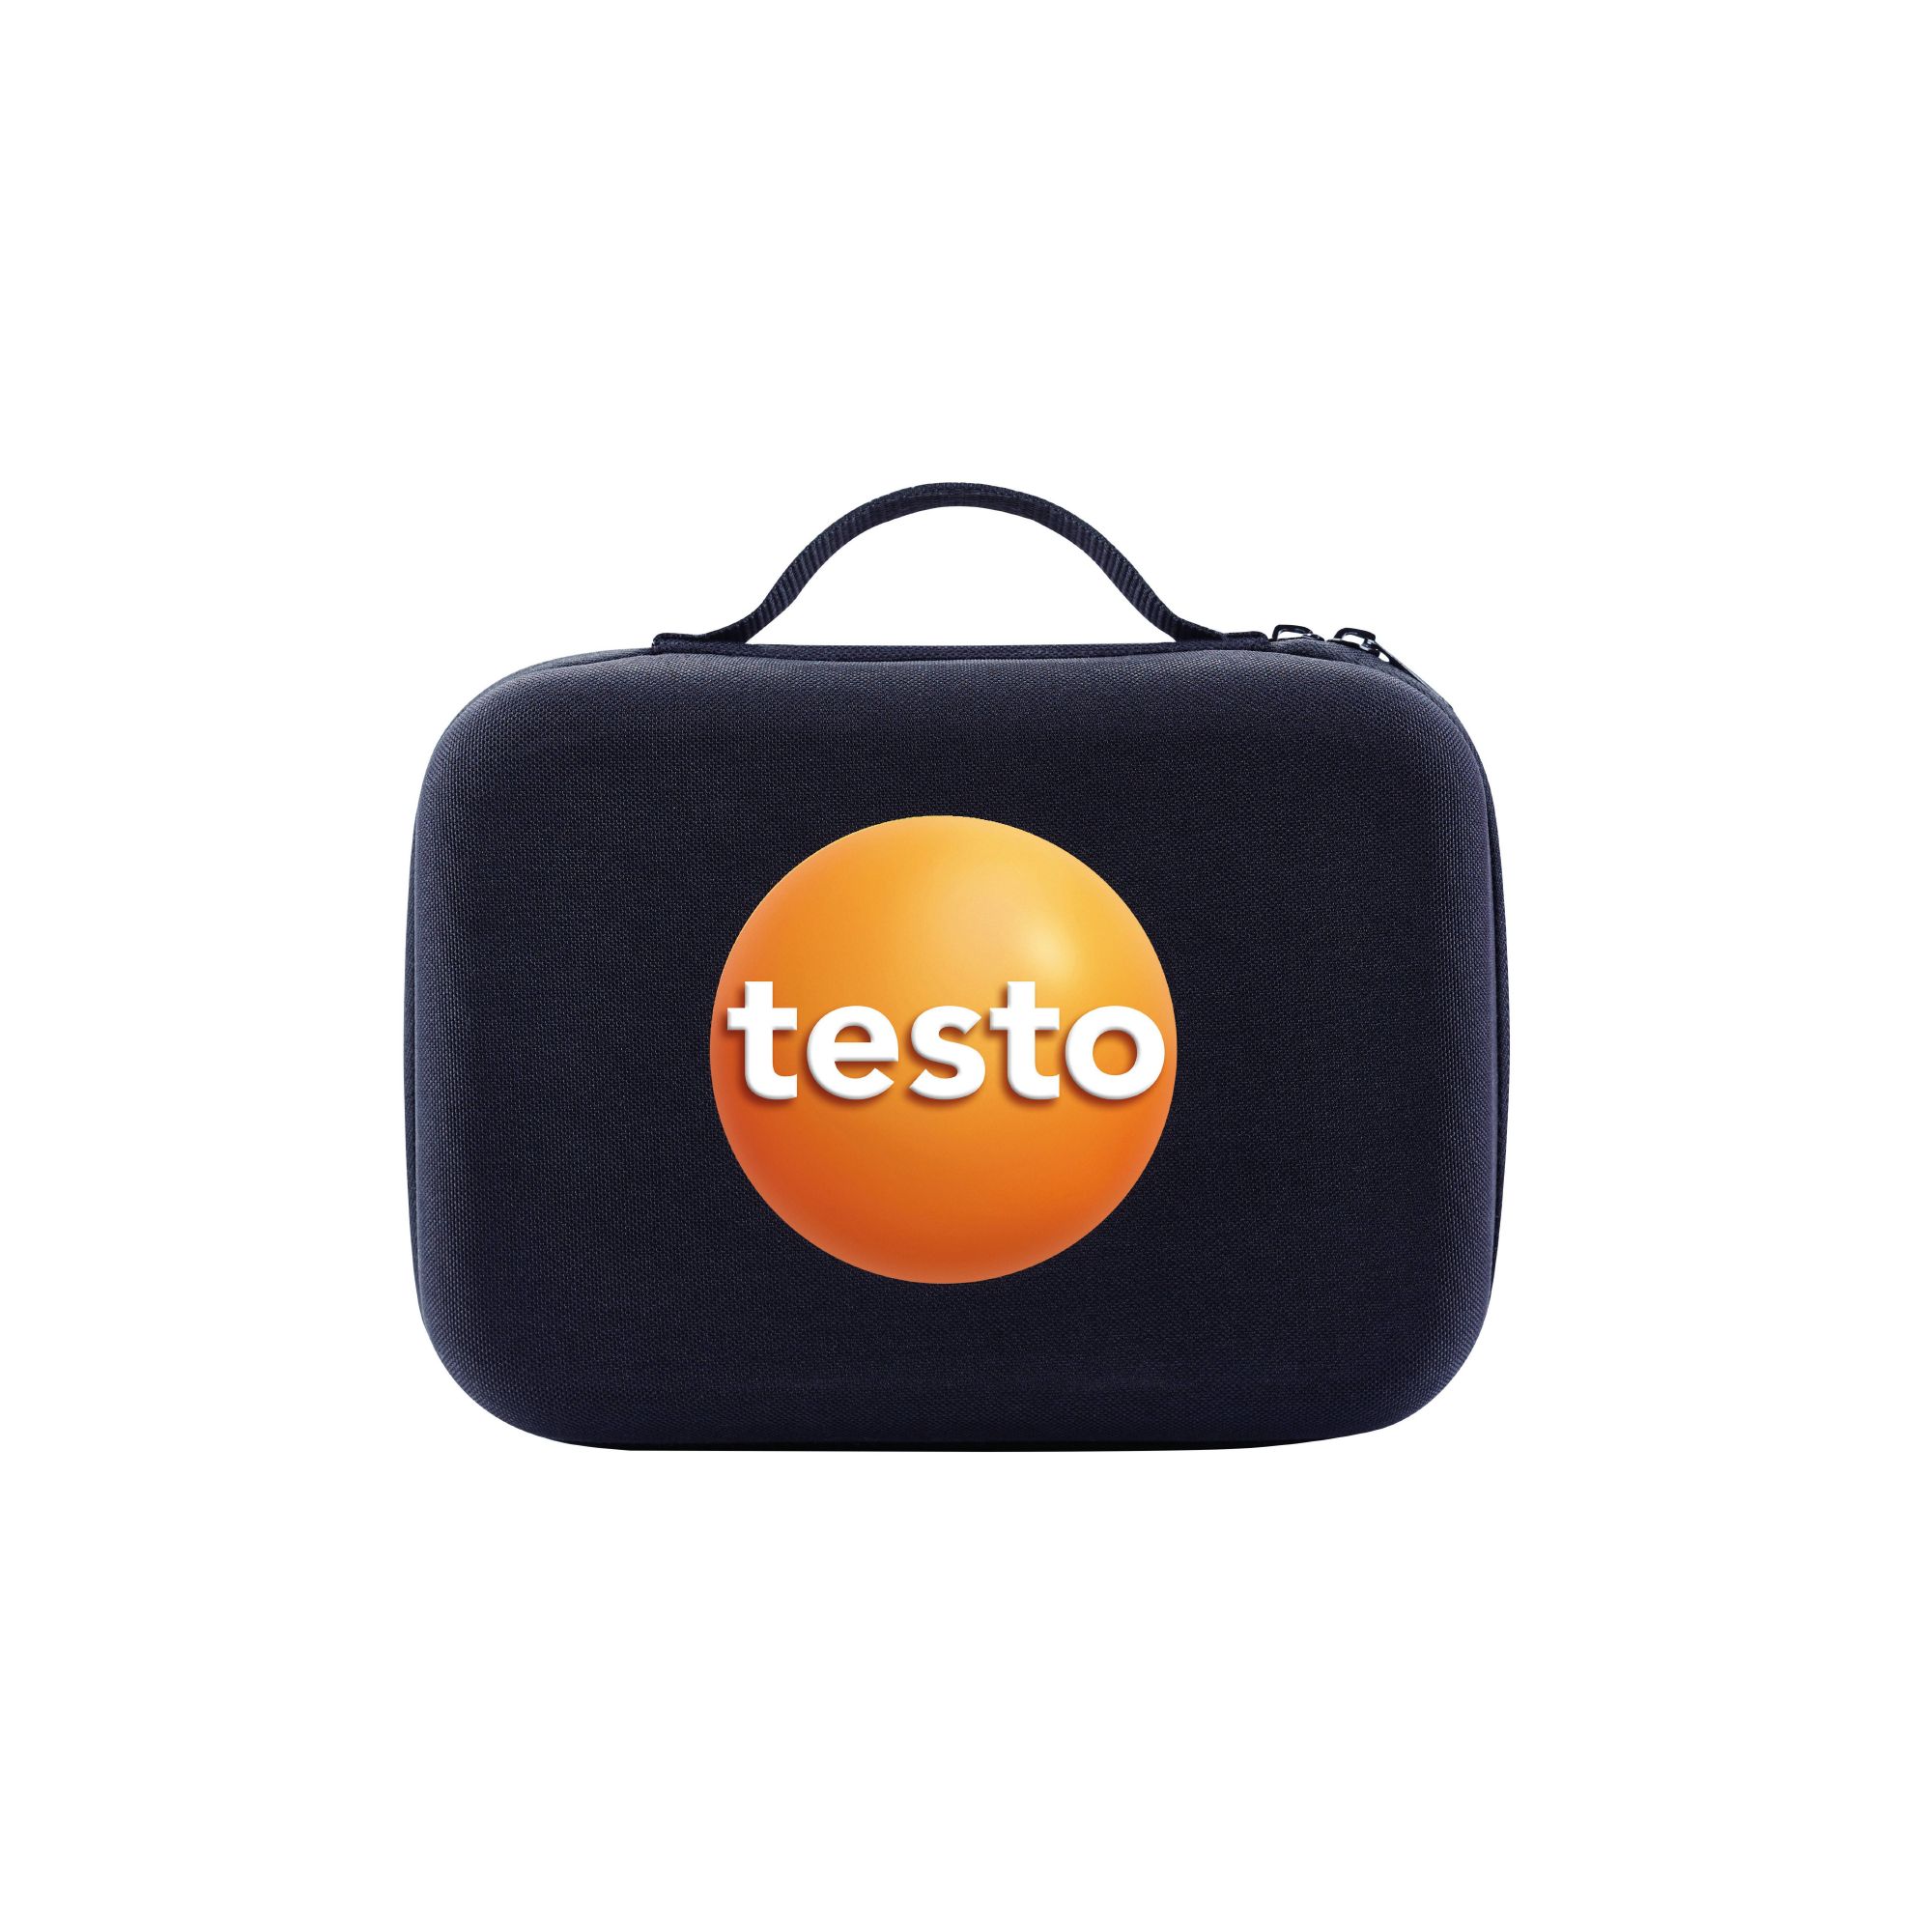 Testo Smart Case (Heizung) - Aufbewahrungstasche - 0516 0270